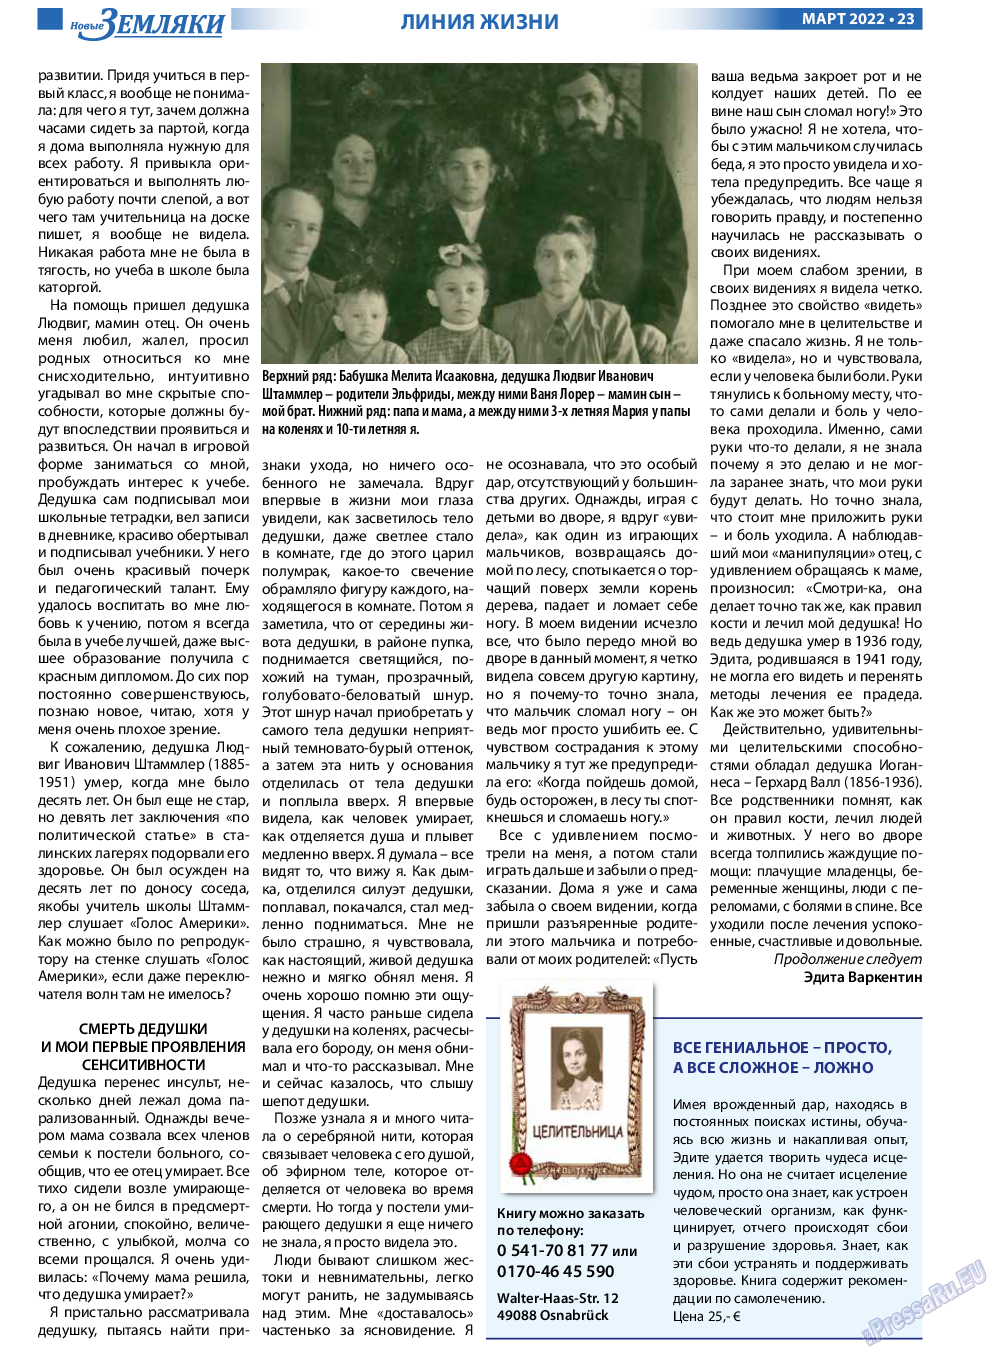 Новые Земляки, газета. 2022 №3 стр.23